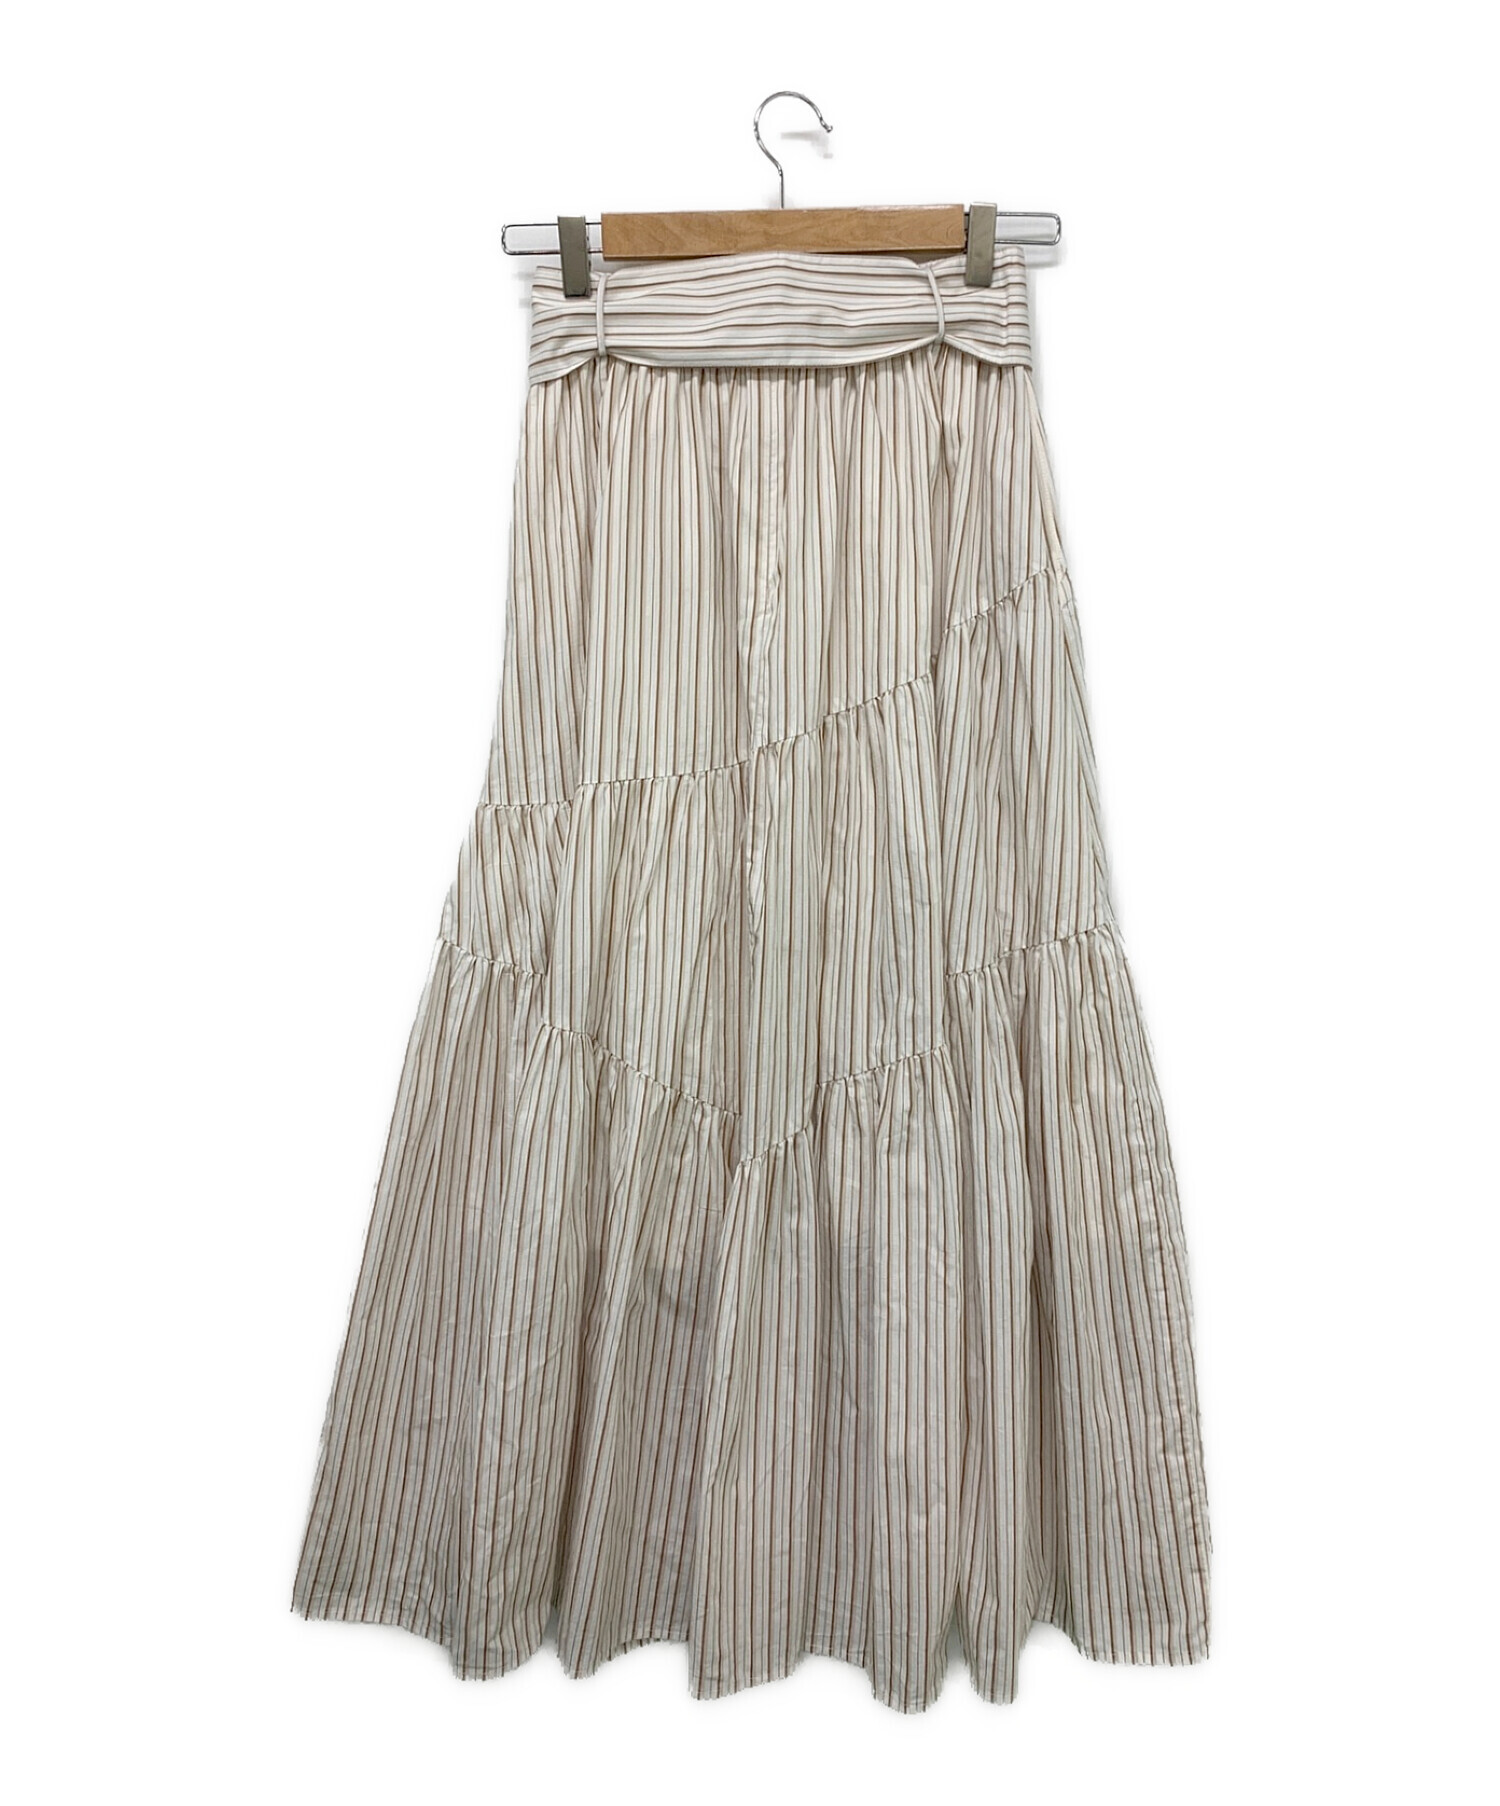 HLT Cotton-Blend Random Tiered Skirt